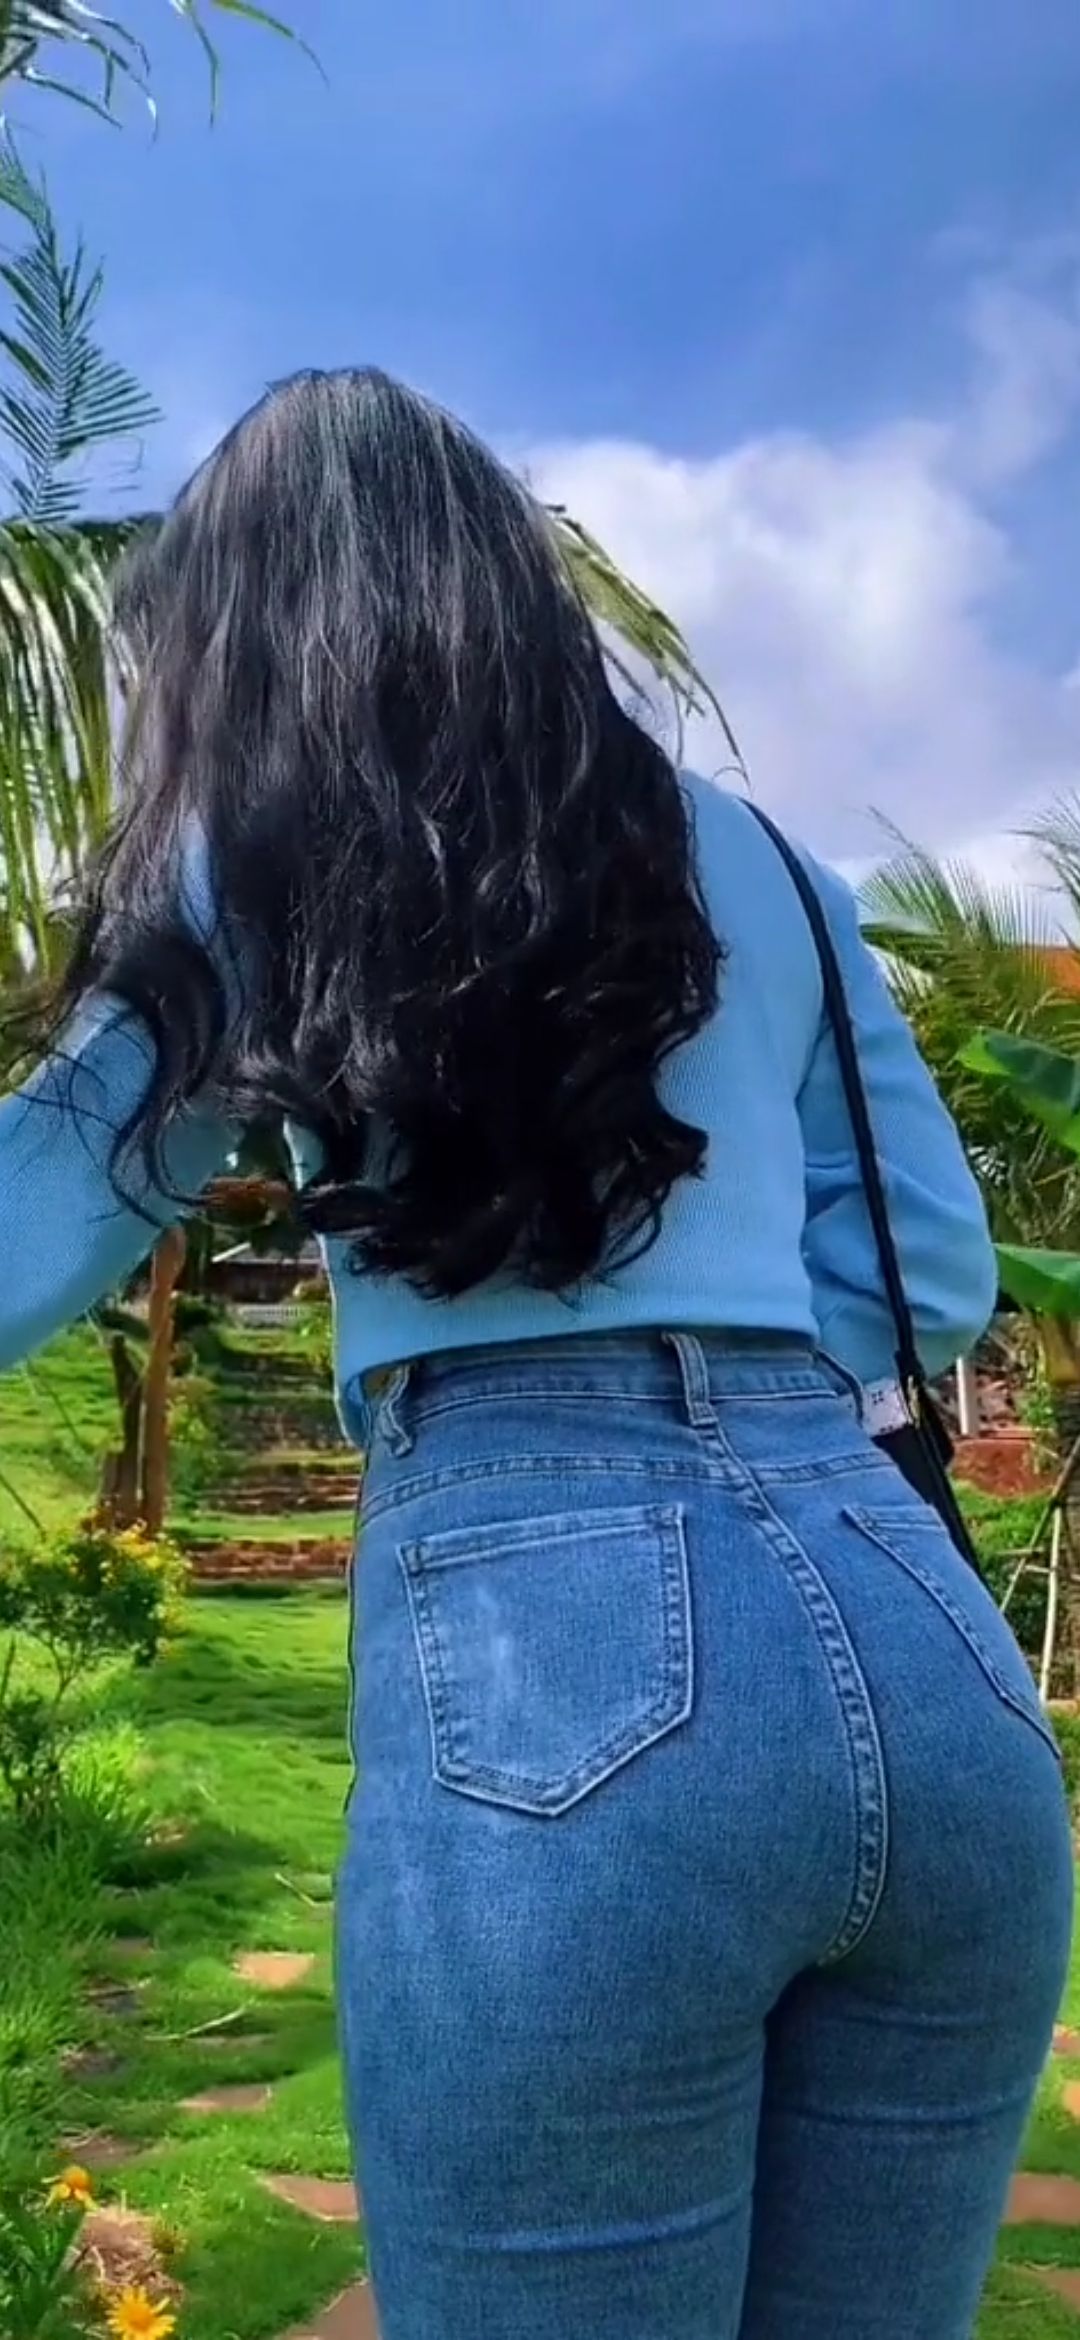 [视频]热带雨林里抓住一只肥美的牛仔裤美女